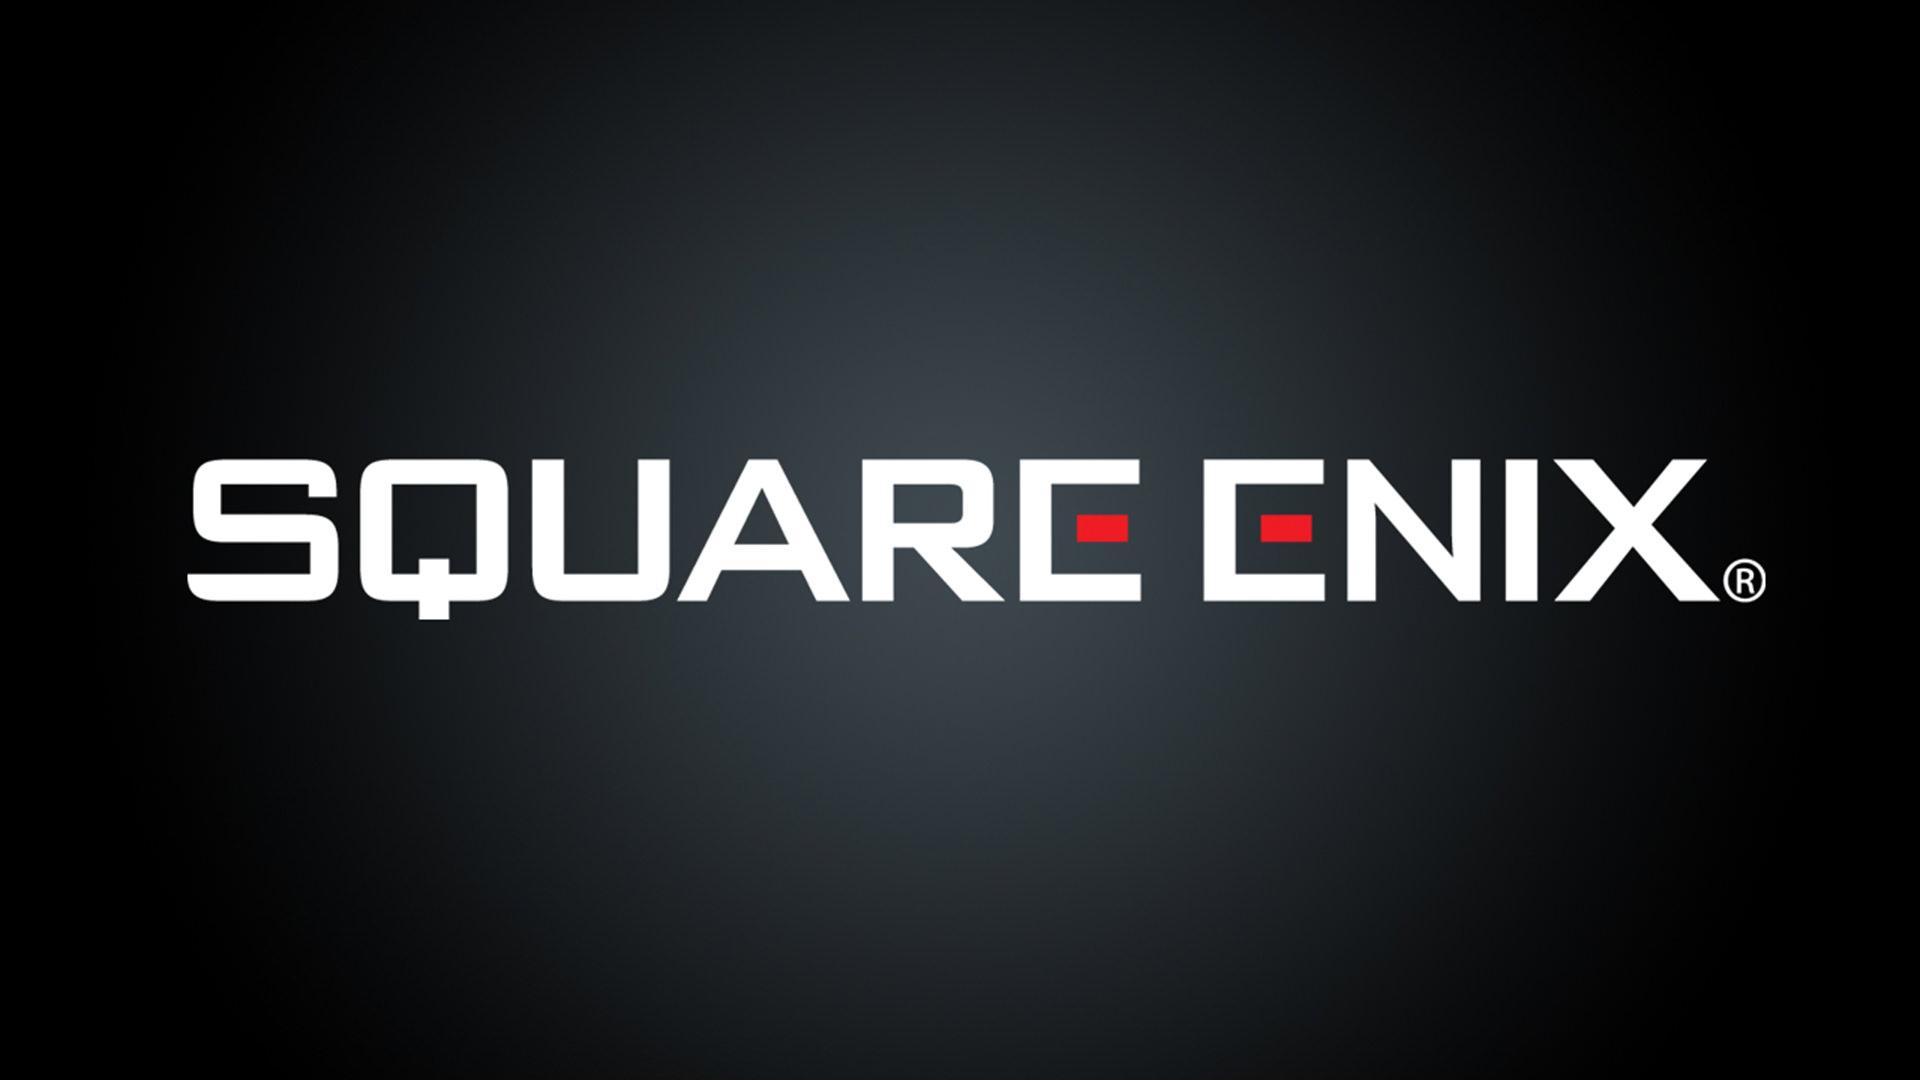 لوگوی اسکوئر انیکس برای نمایشگاه E3 2021